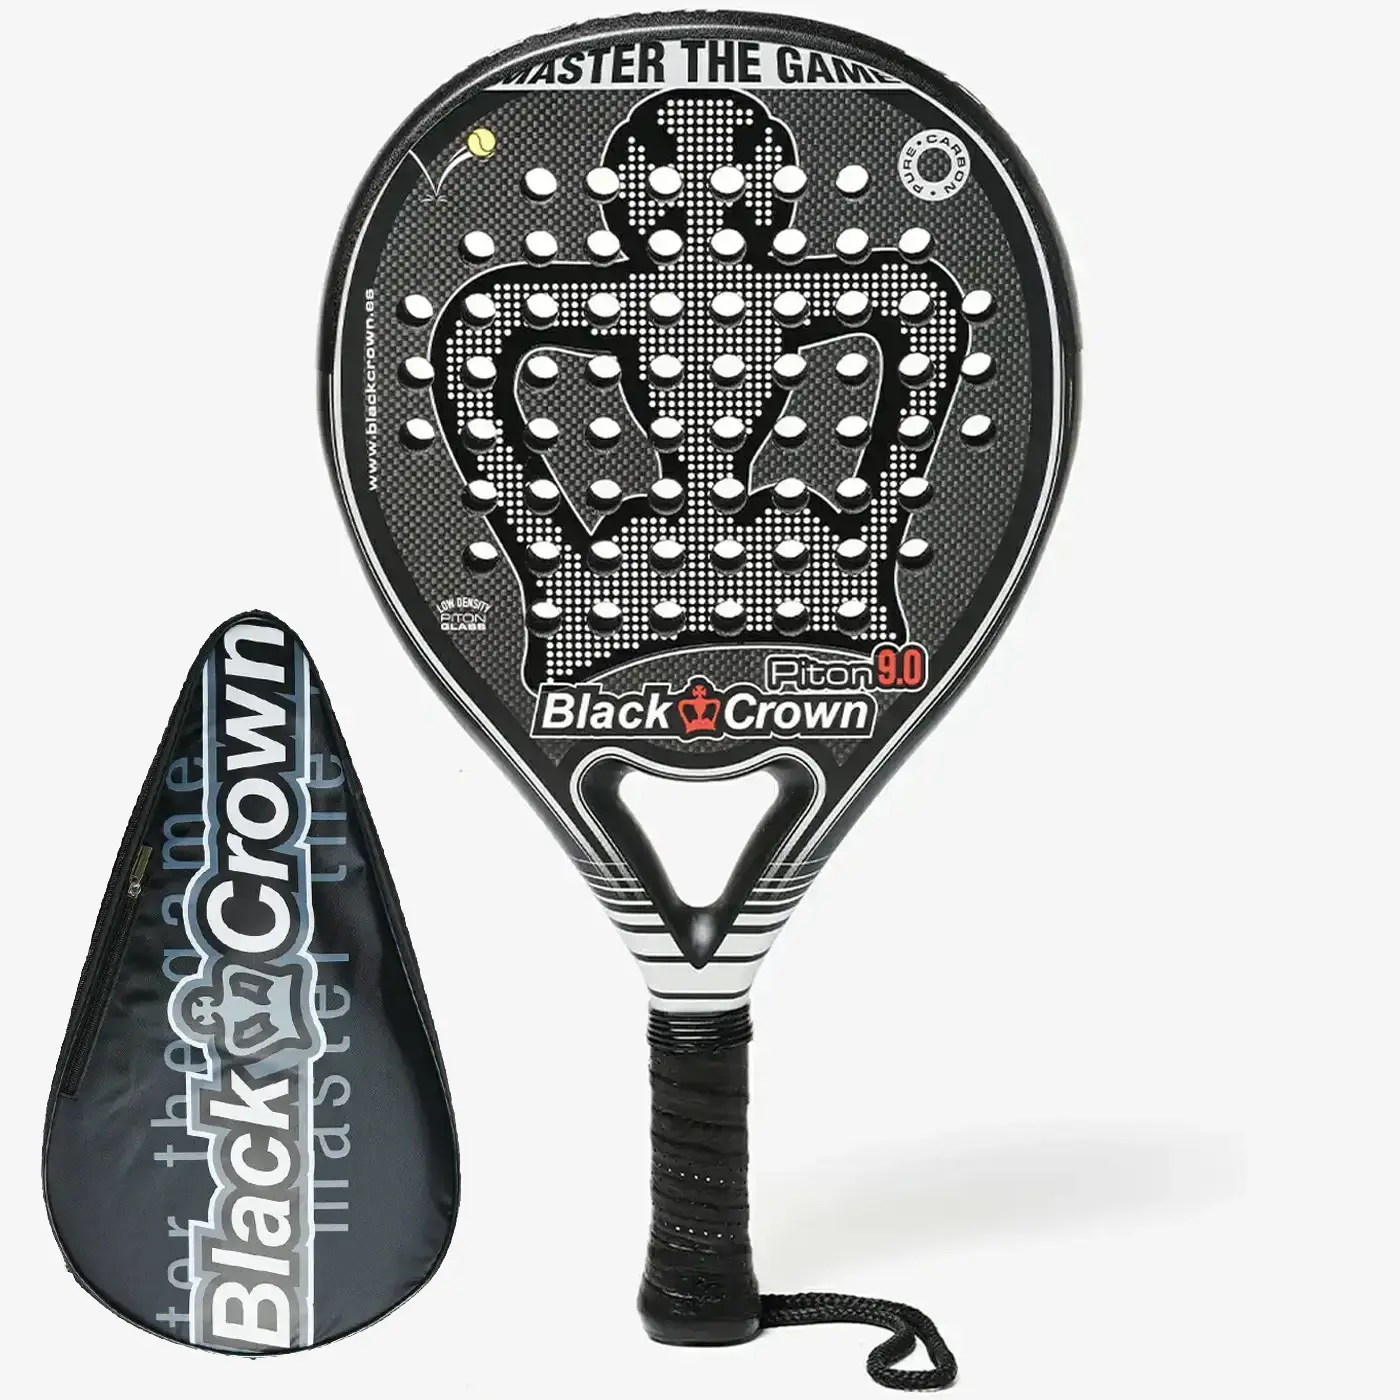 Black Crown Piton 9.0 Padel Racket, padel rackets Image